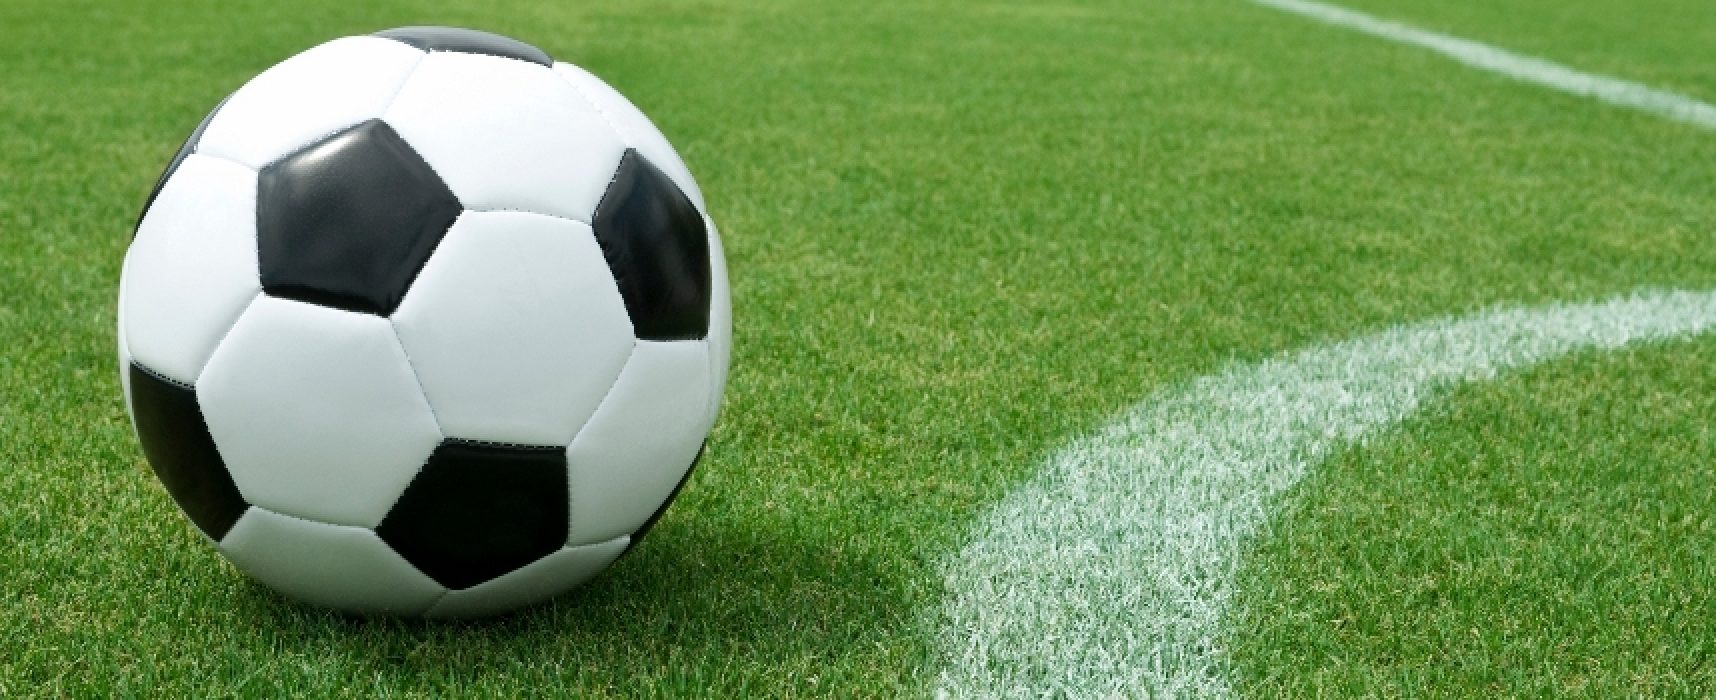 Comitato Regionale Puglia ferma per tre settimane attività calcio e futsal regionale e provinciale